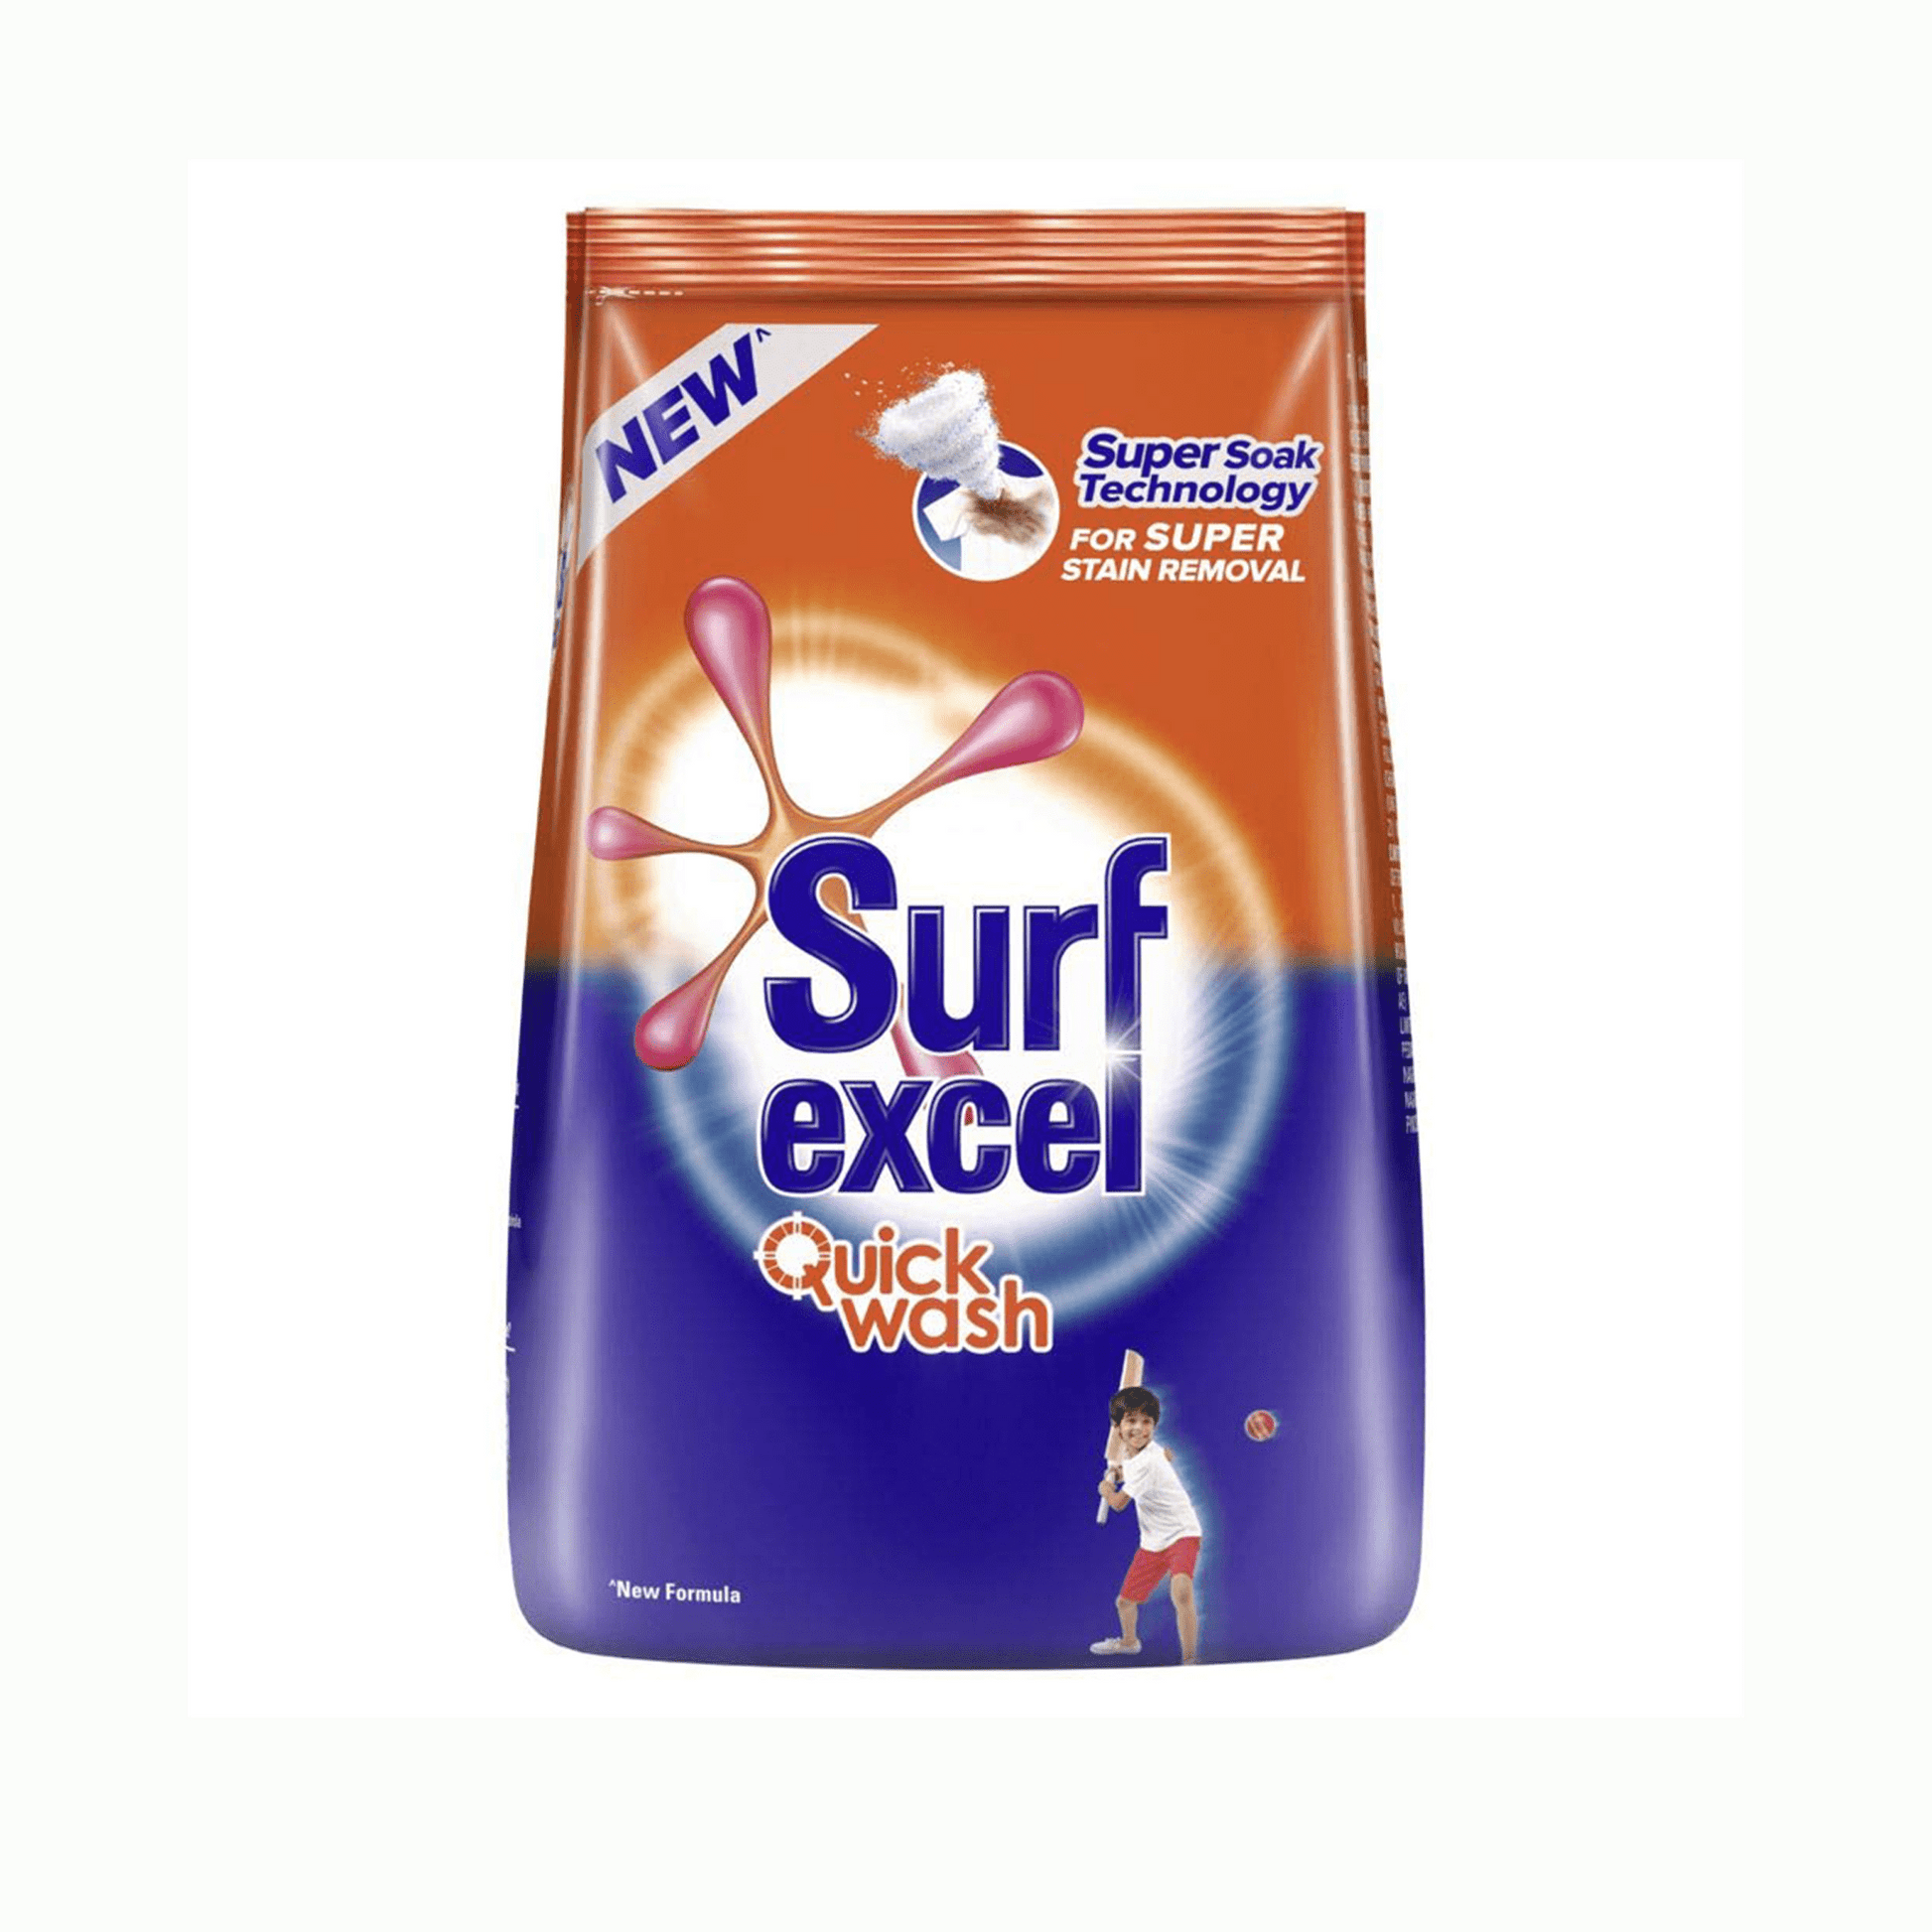 Surfexcel Quick Wash Detergent Powder.